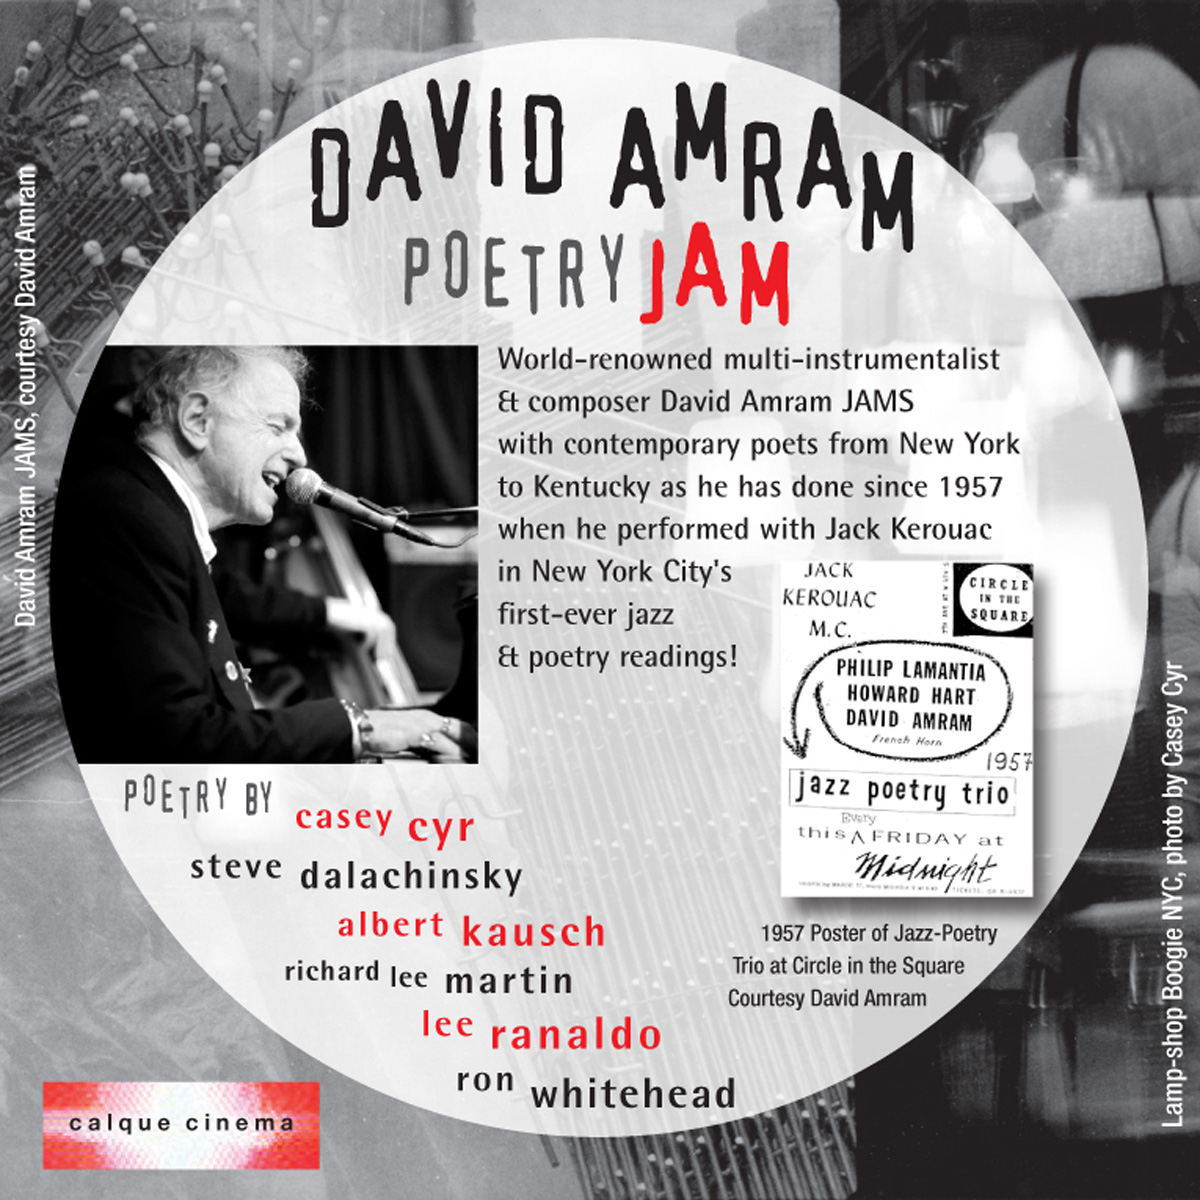 David Amram Poetry JAM by Calque Cinema